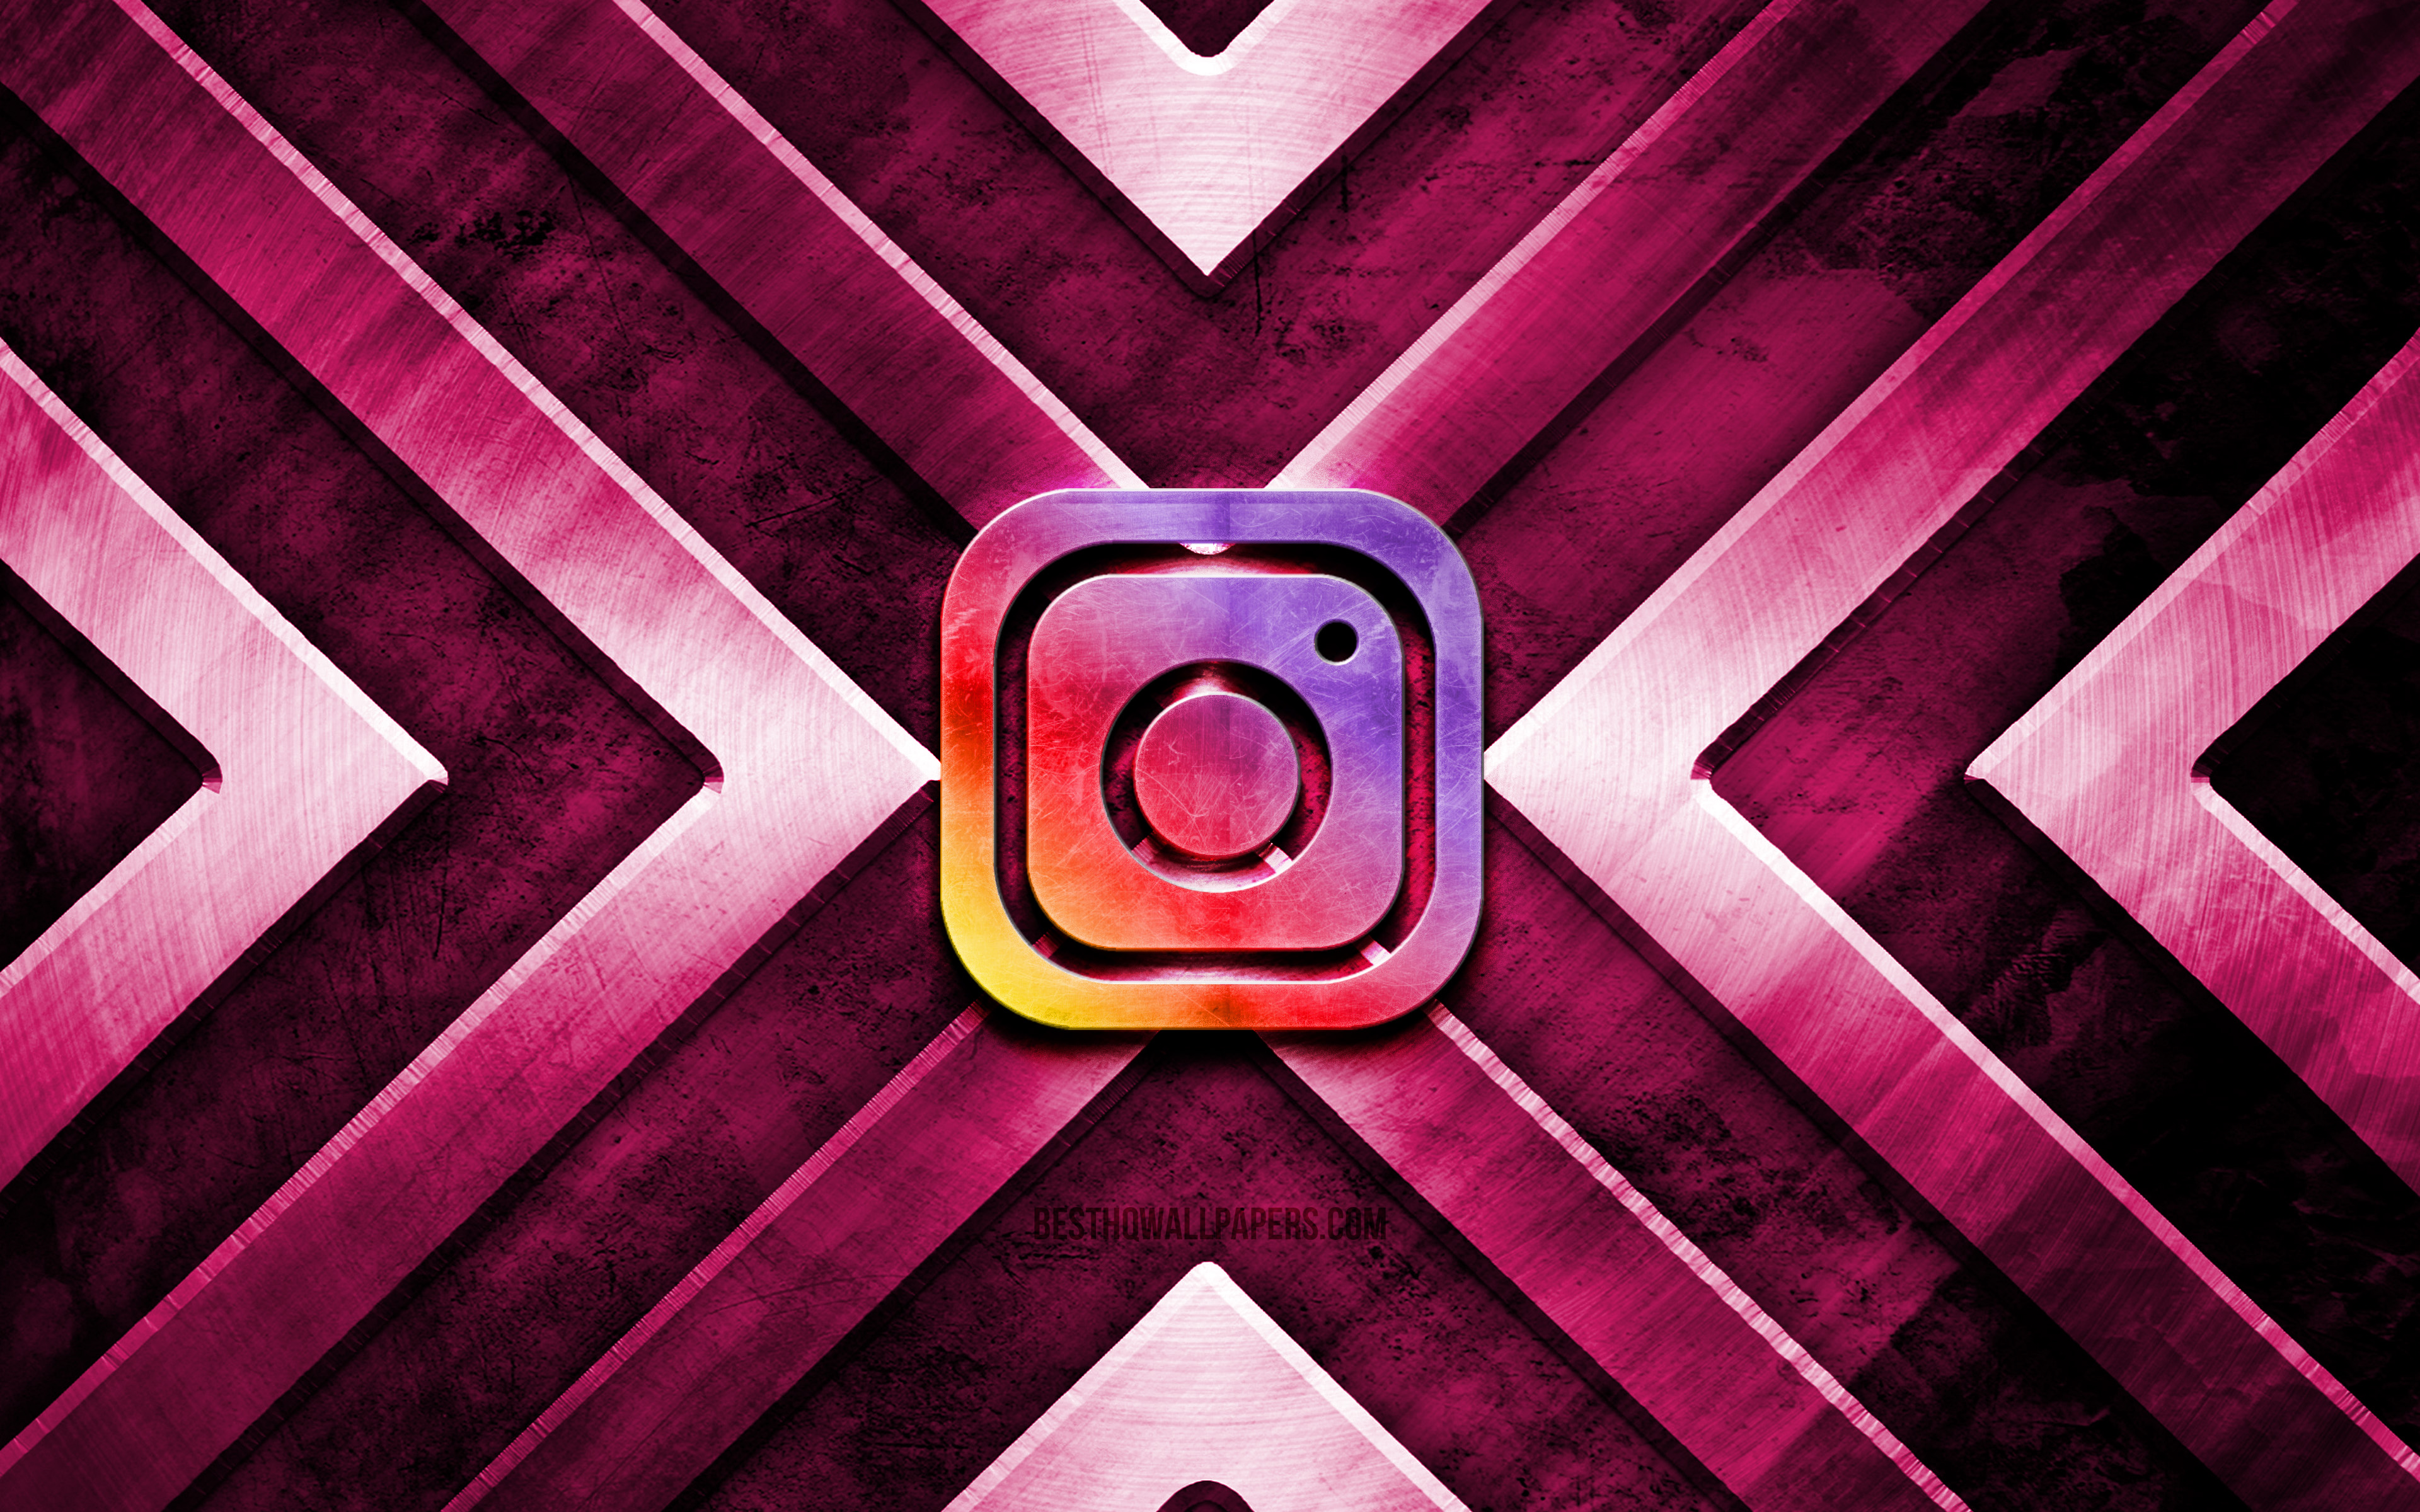 Instagram Metal Logo là biểu tượng ấn tượng của mạng xã hội nổi tiếng. Hãy xem hình ảnh liên quan để tìm kiếm những biểu tượng kim loại đẹp mắt nhất và sử dụng chúng để trang trí trang cá nhân của bạn.